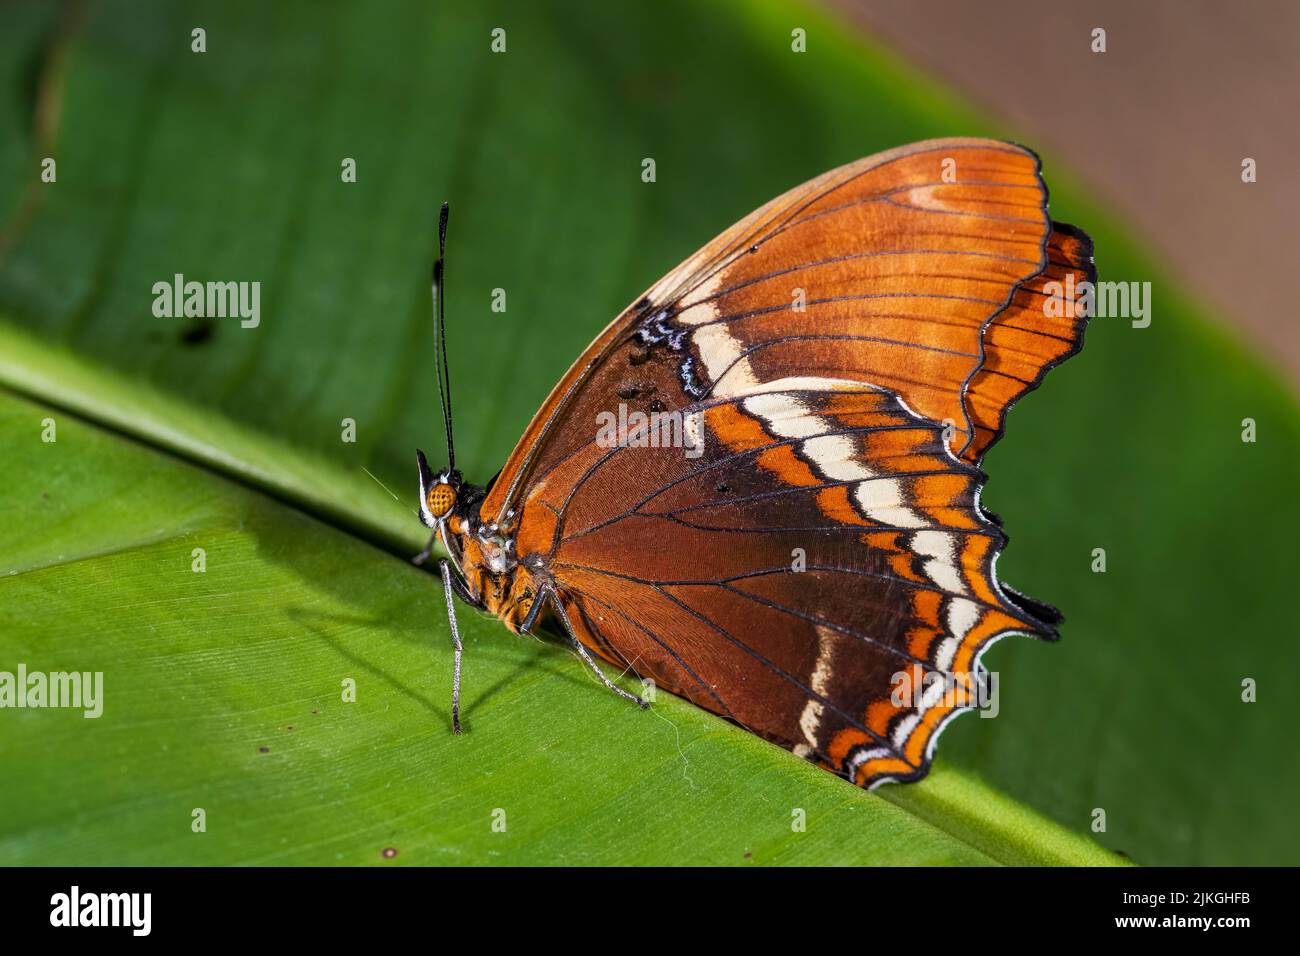 Mariposa Pág. Oxidada - Siproeta epaphus, hermosa mariposa coloreada de bosques y prados de América Latina, Costa Rica. Foto de stock